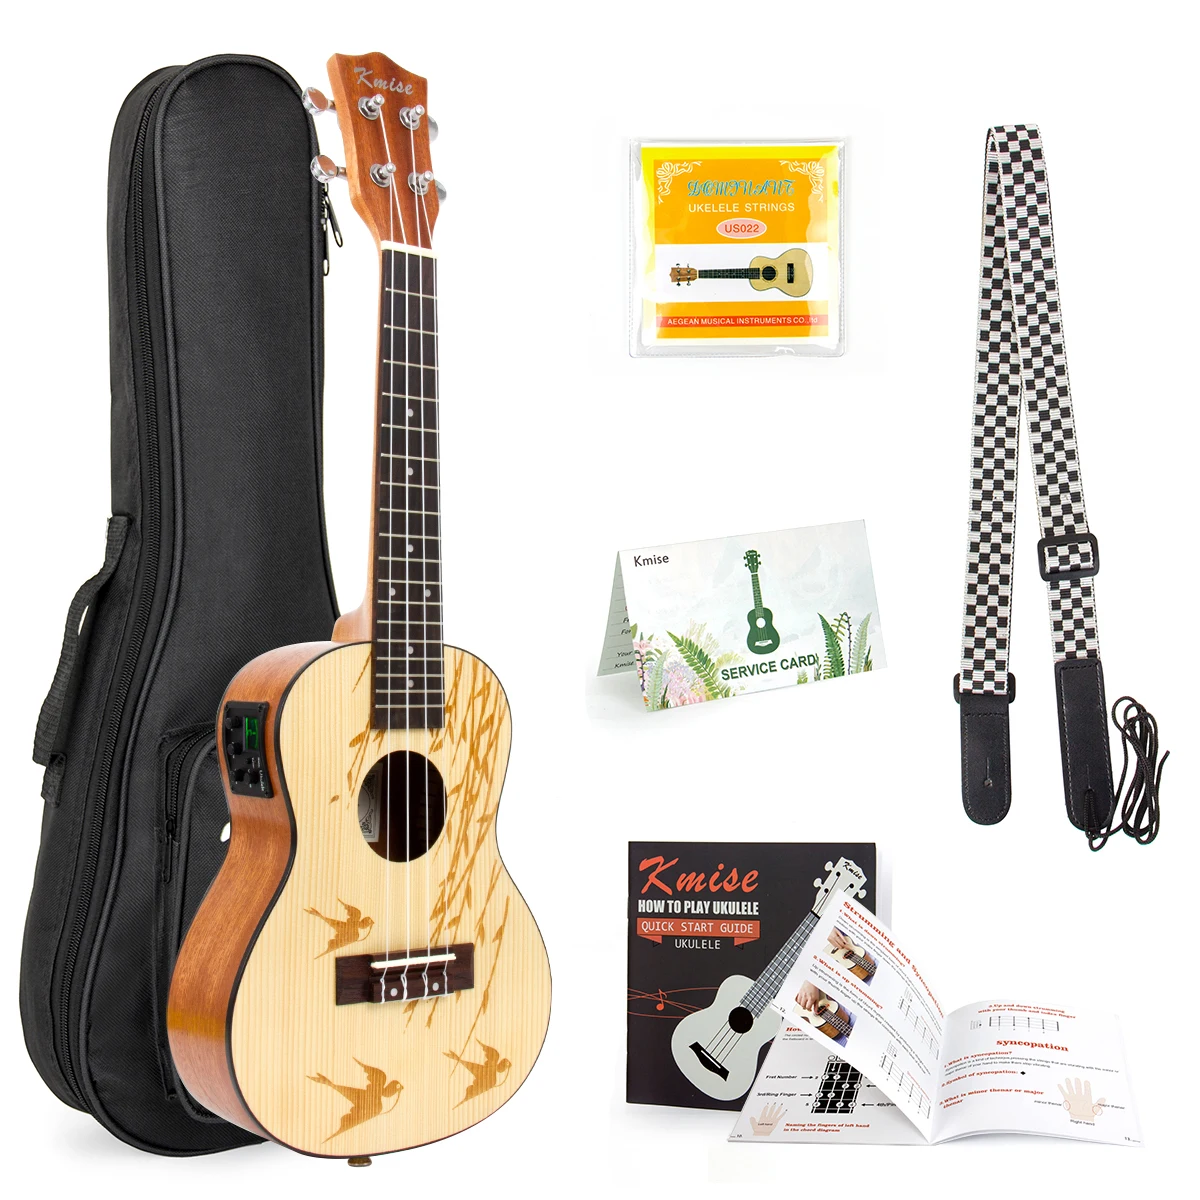 

Kmise Concert Ukulele Solid Spruce 23 inch Ukelele Guitar Uke Kit w/ Strap Tuner String Gig Bag Instruction Booklet for Beginner